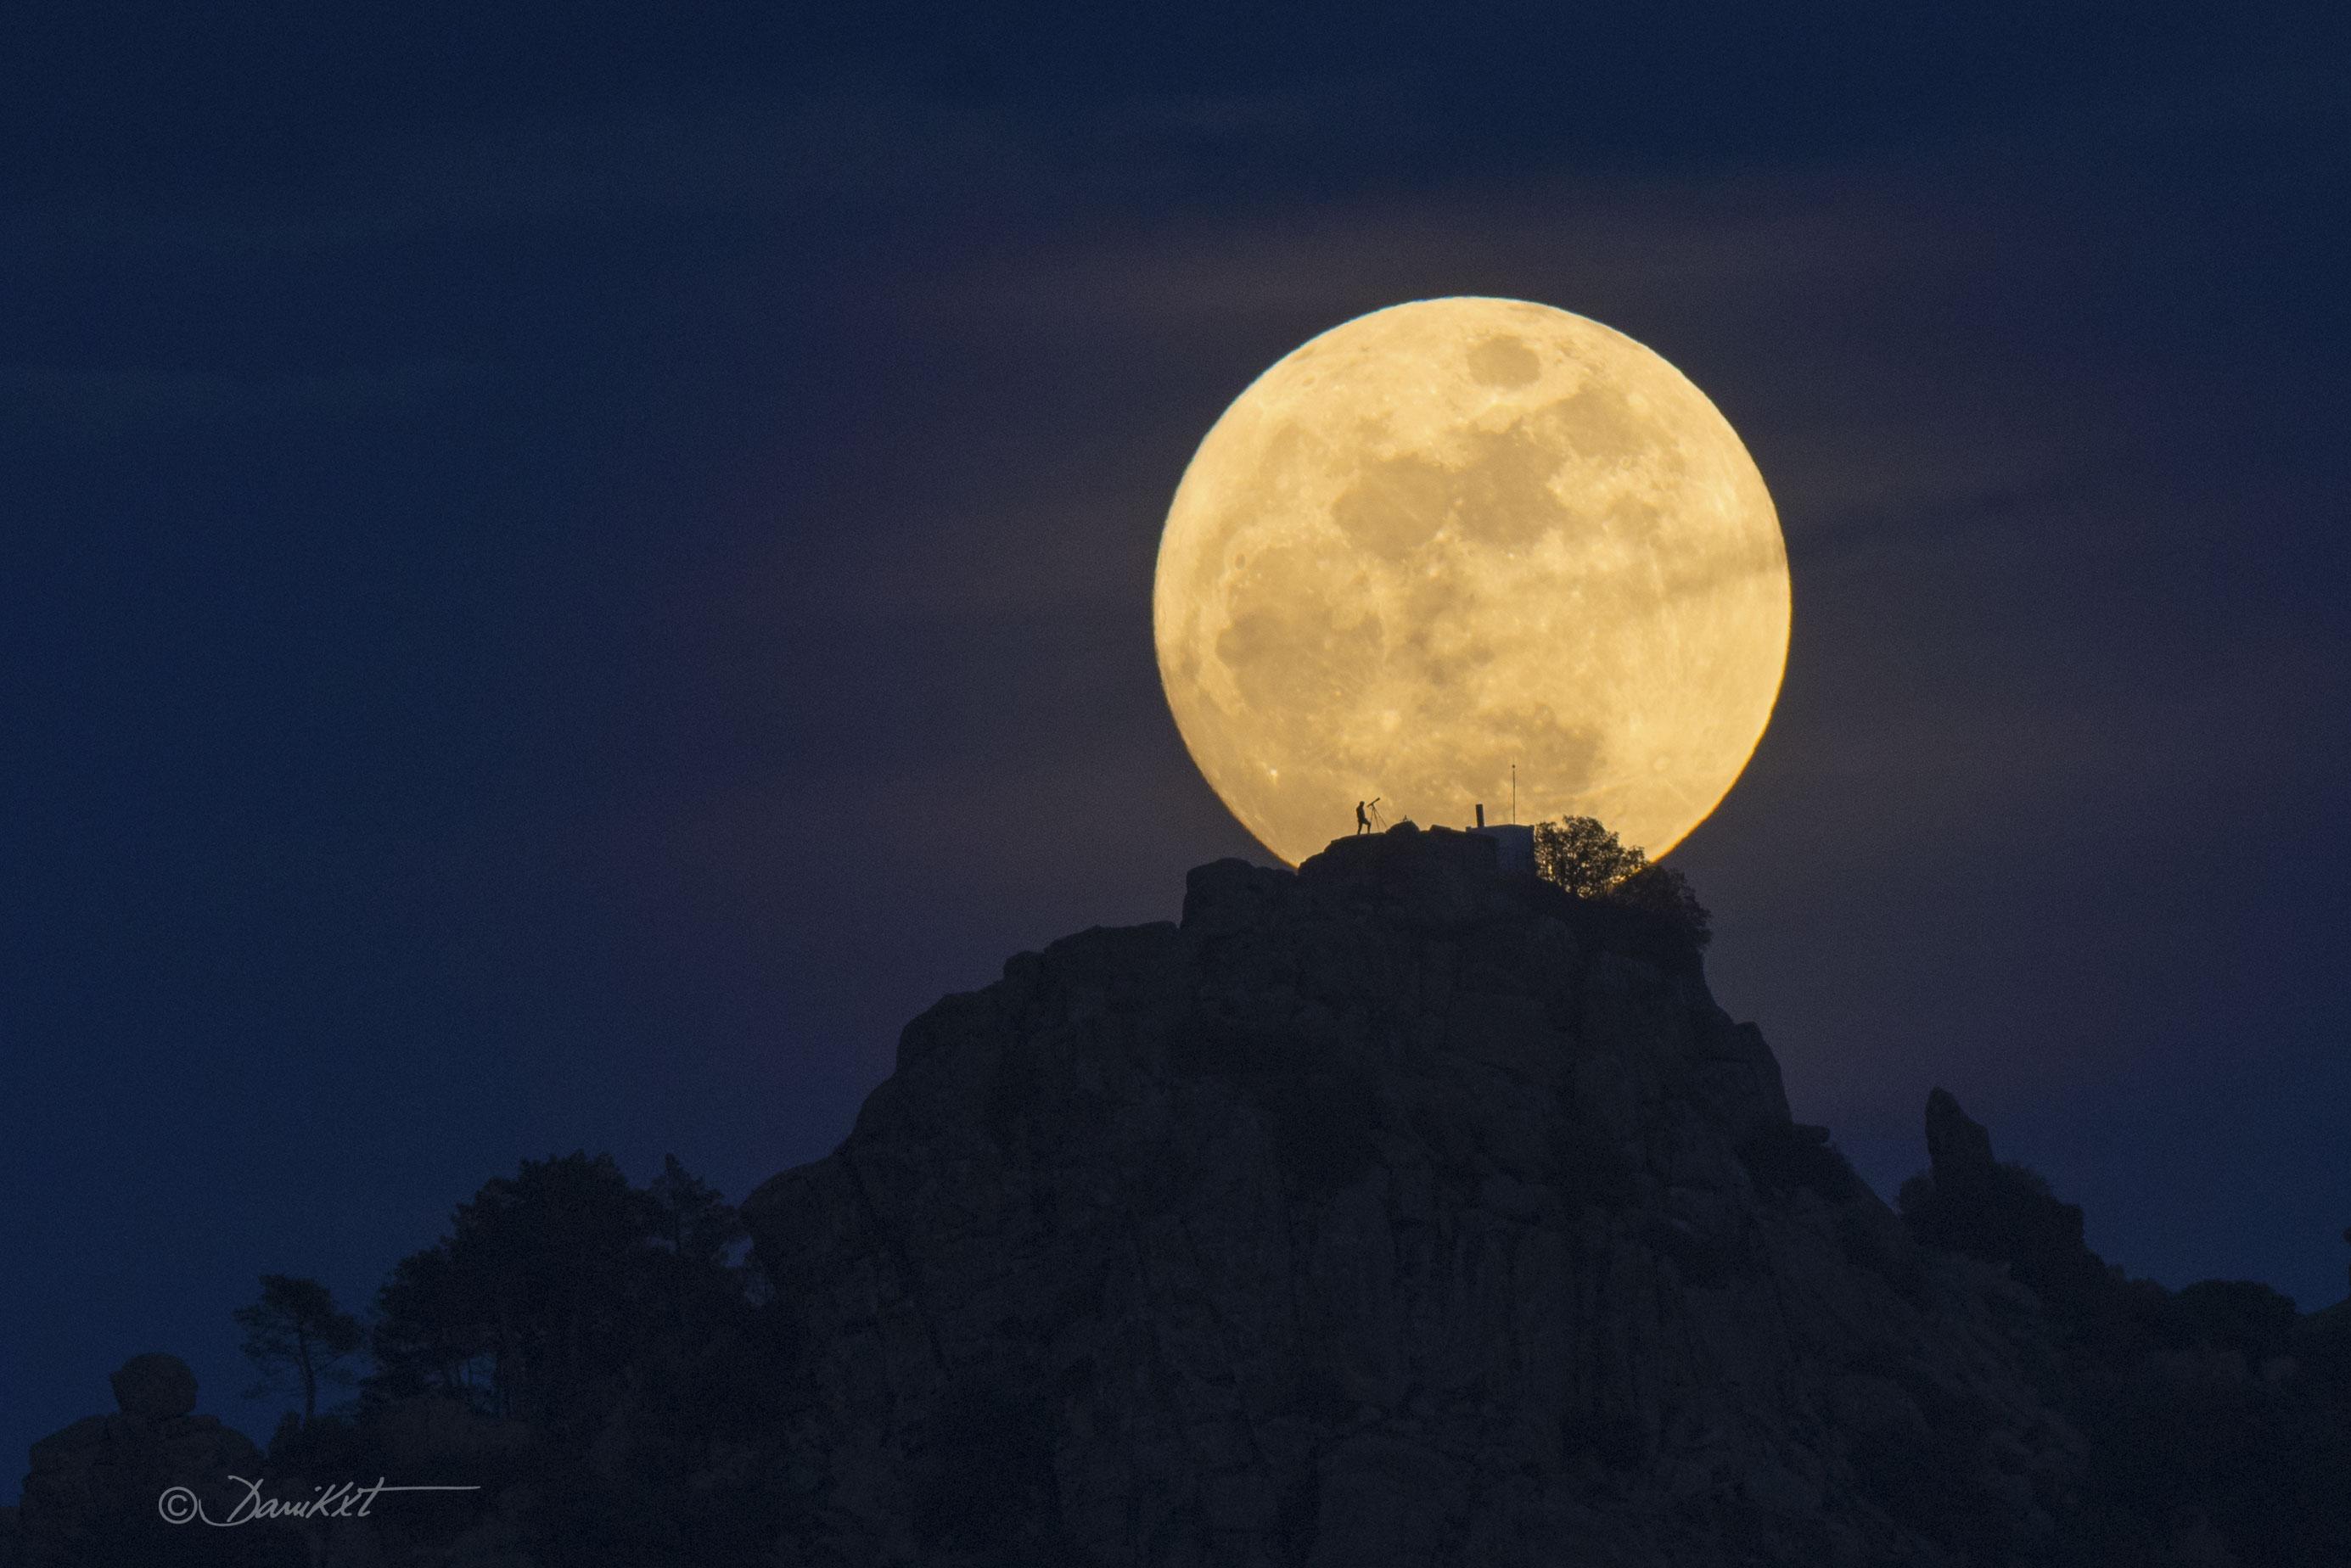 بدرٌ مُقرّب وأمامه مرتفع صخري عليه شخص مع تلسكوبه يظهر ك ظليل ومن خلفه القرص القمري الأصفر